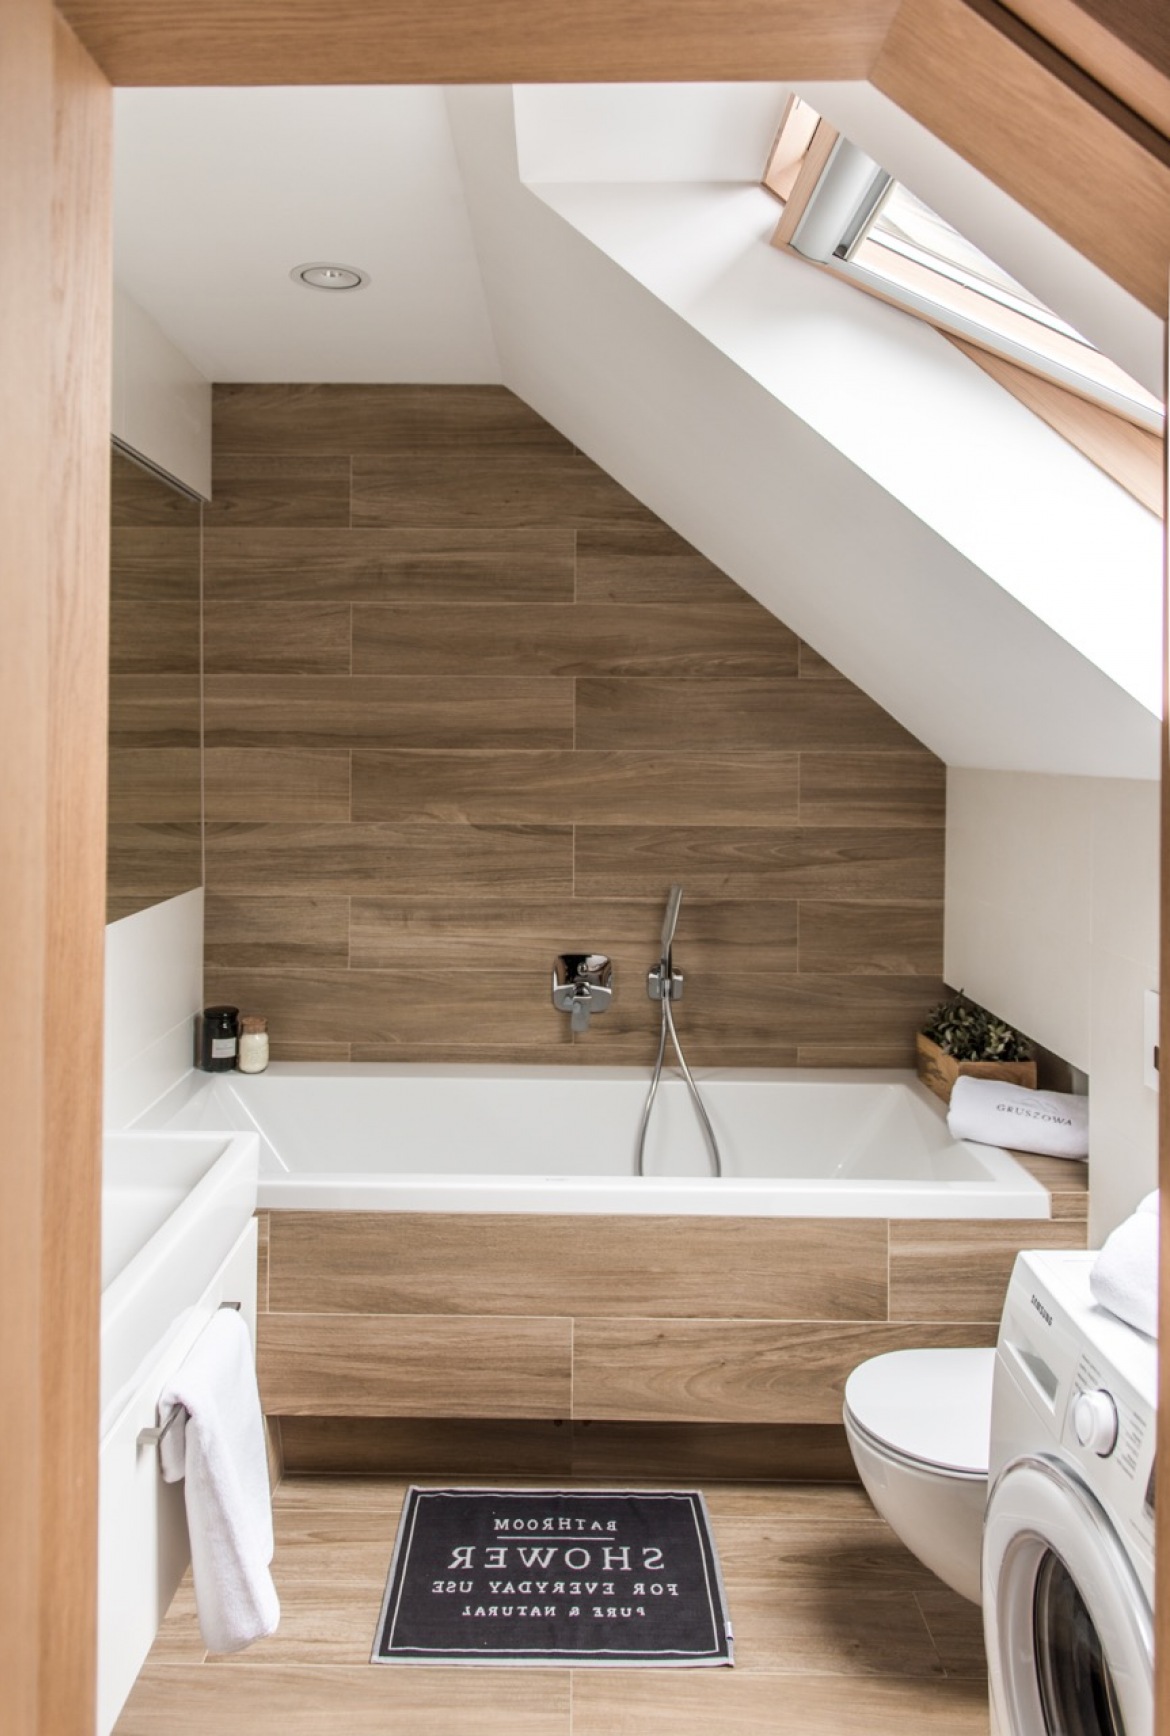 Mała łazienka z drewnianymi panelami na poddaszu (55838)